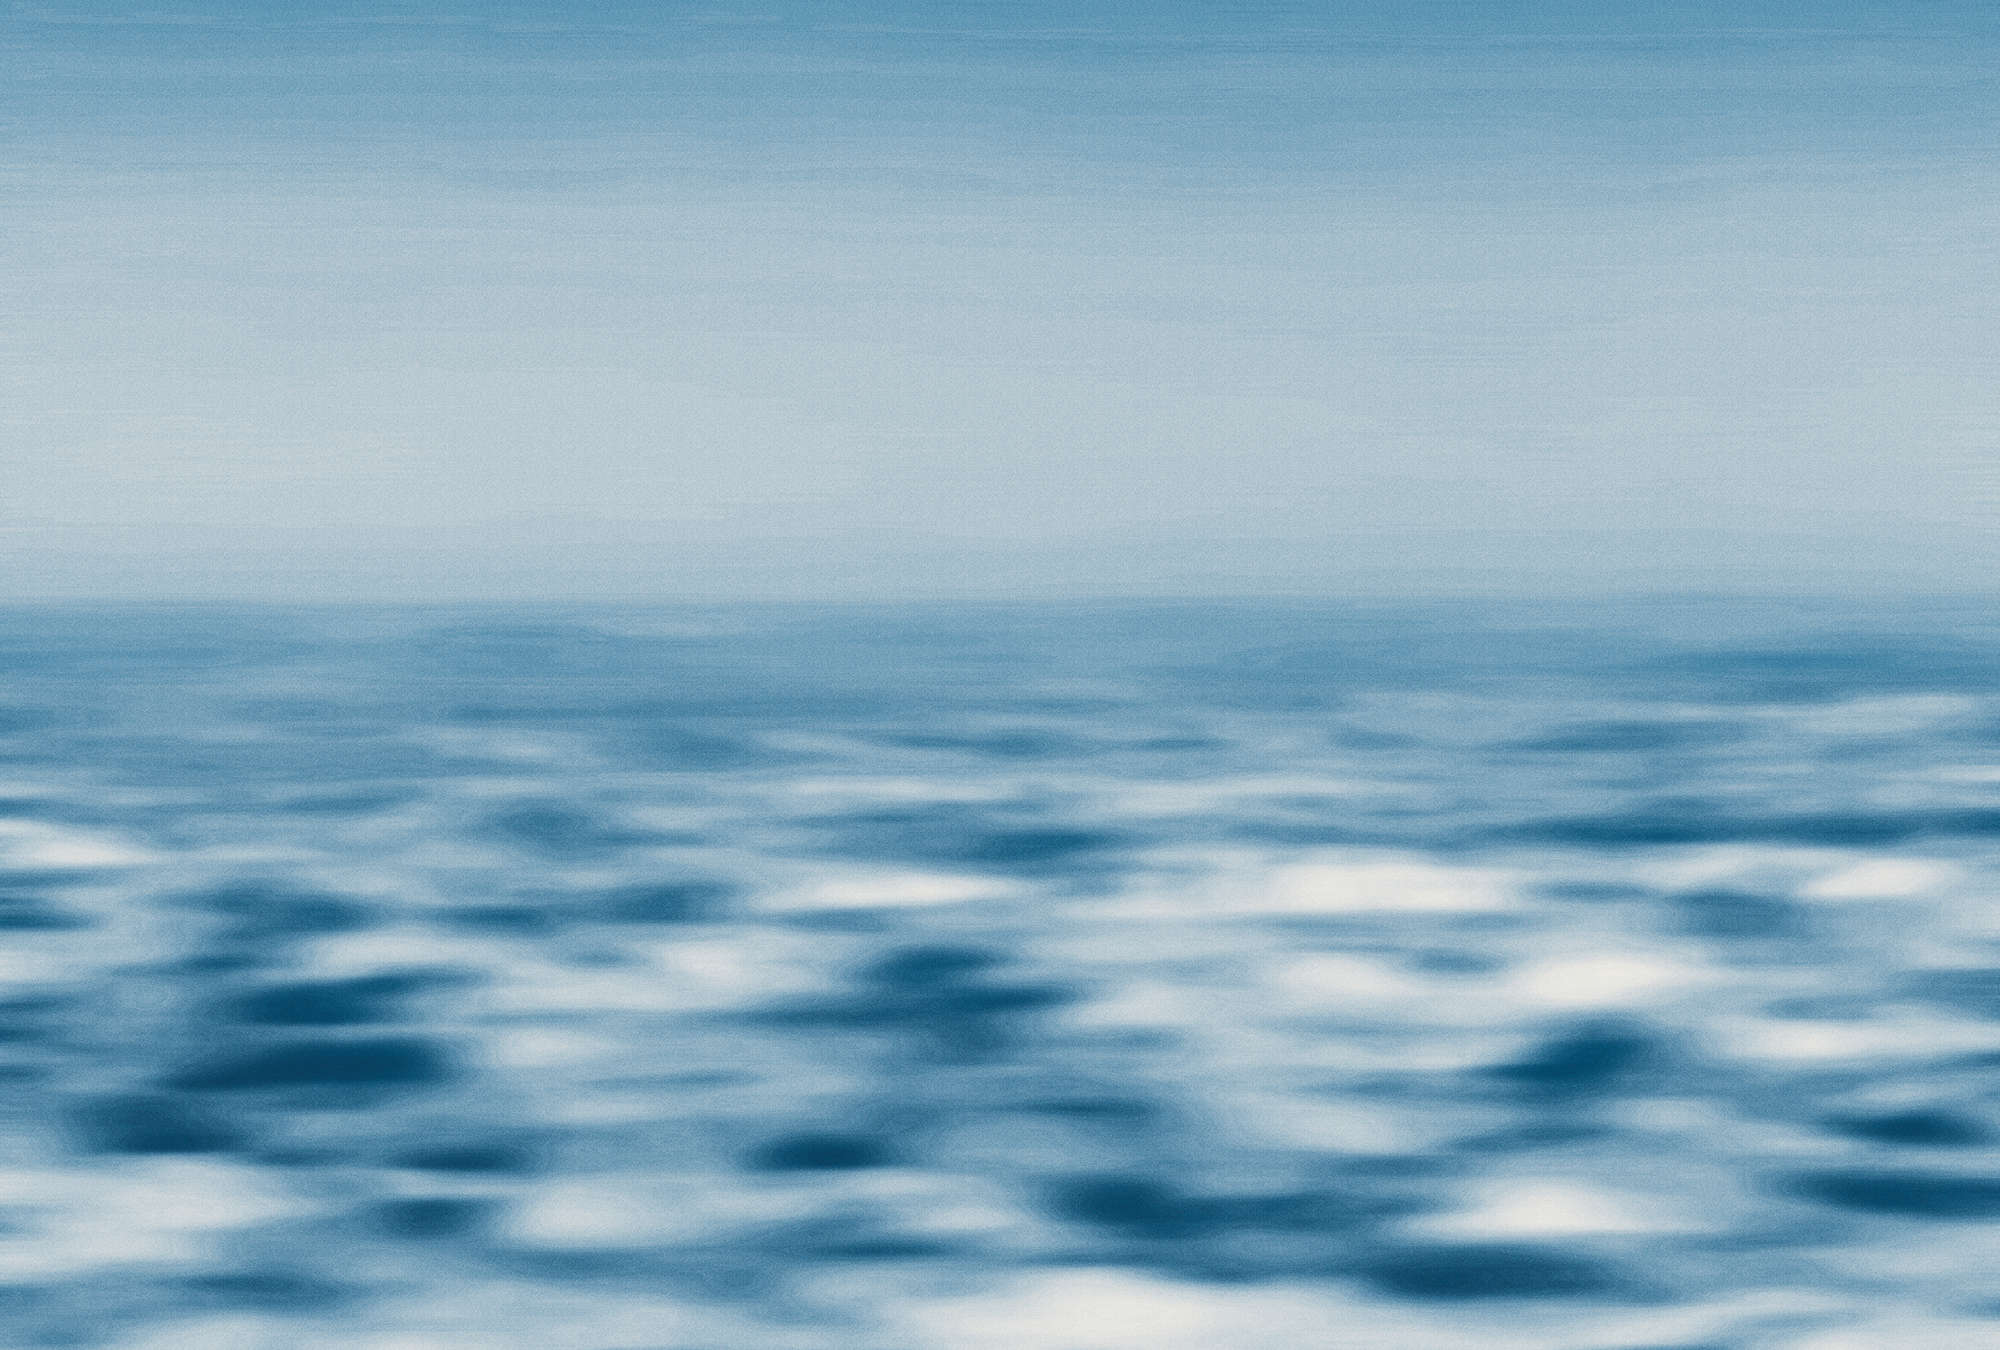             Muurschildering abstract zeezicht, golven & lucht - blauw, wit
        